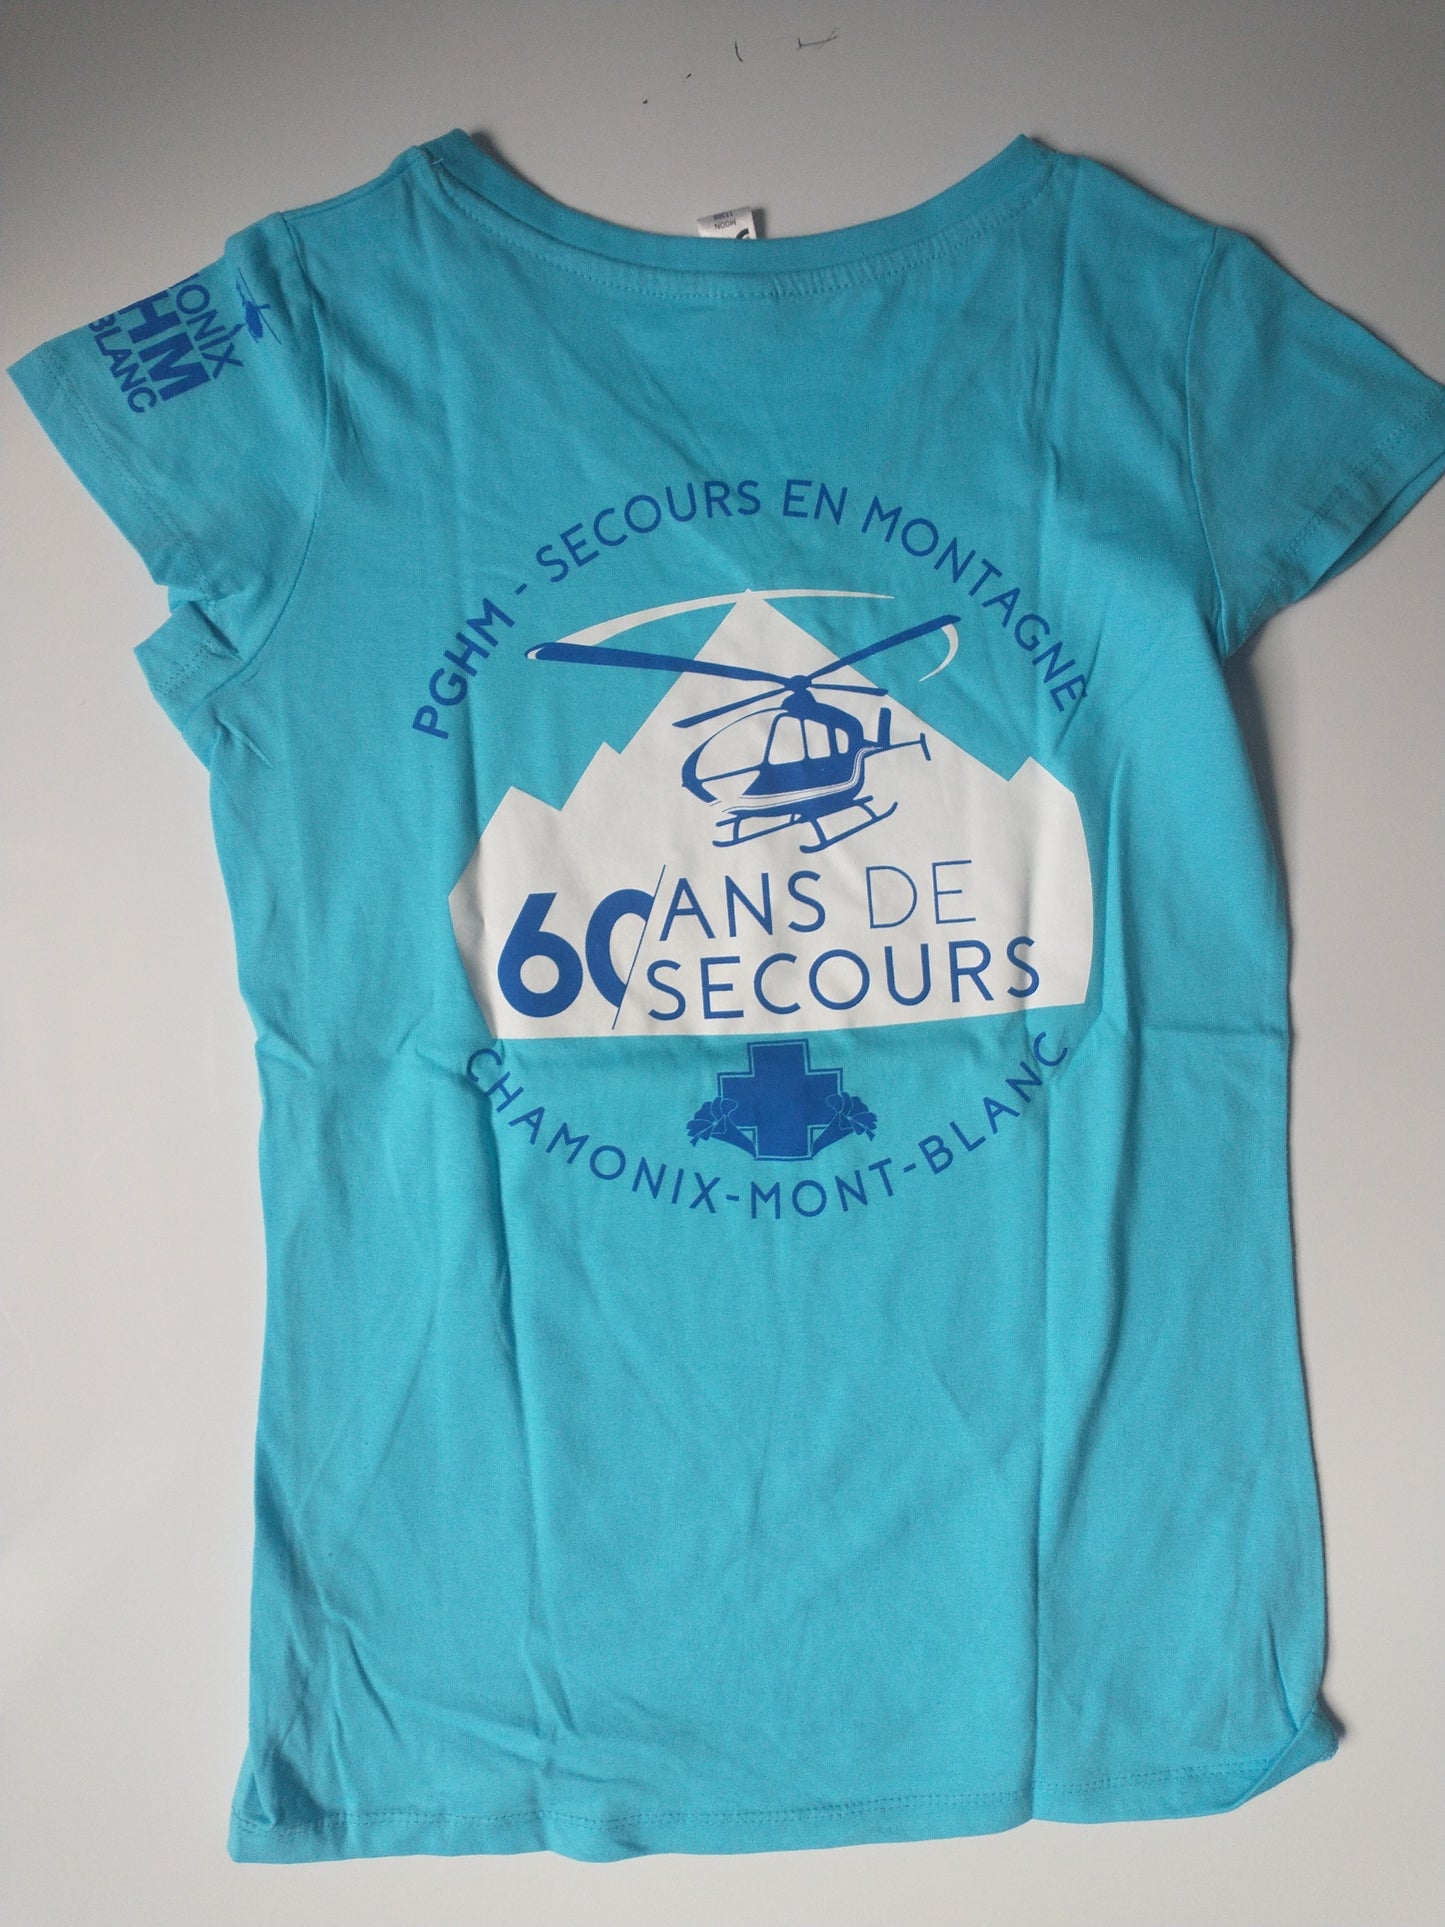 T-shirt femme "60 ans de secours"